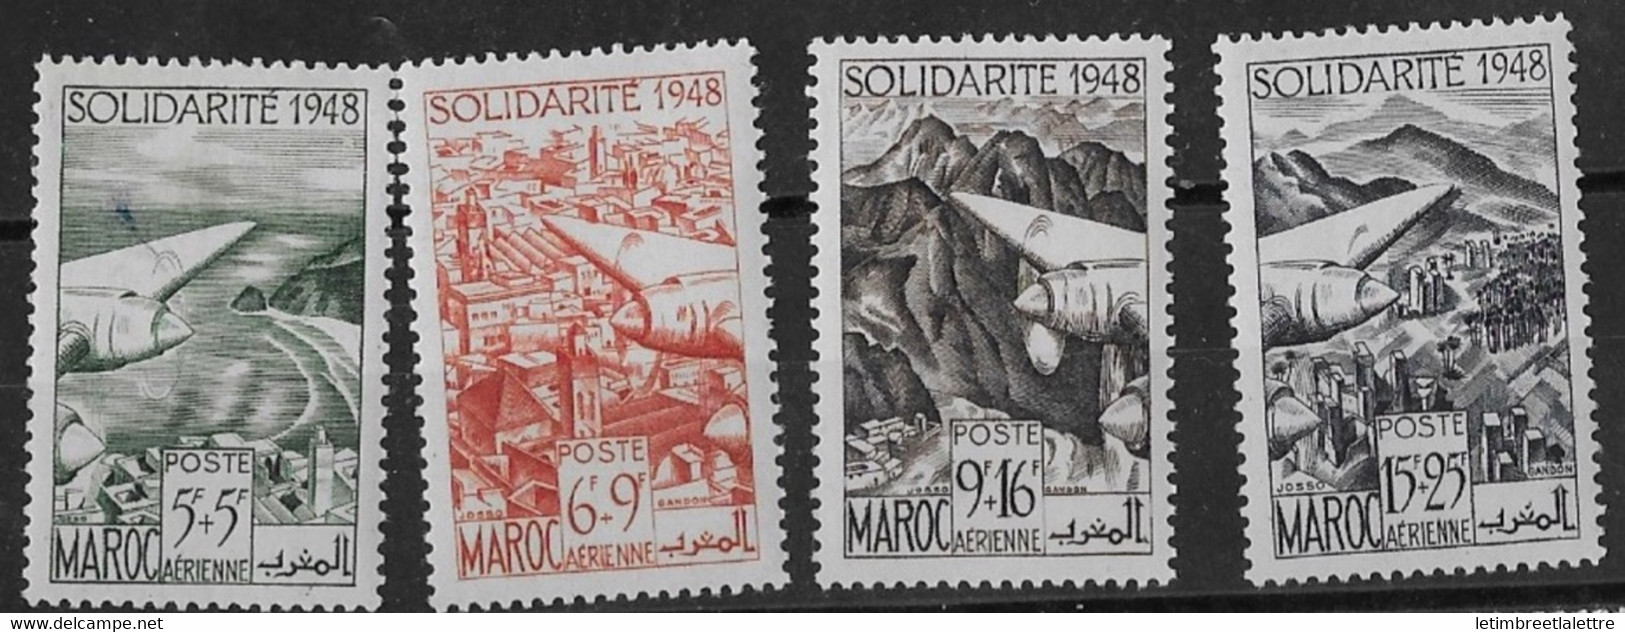 ⭐ Maroc - Poste Aérienne - YT N° 70 à 73 ** - Neuf Sans Charnière - 1949 ⭐ - Luftpost